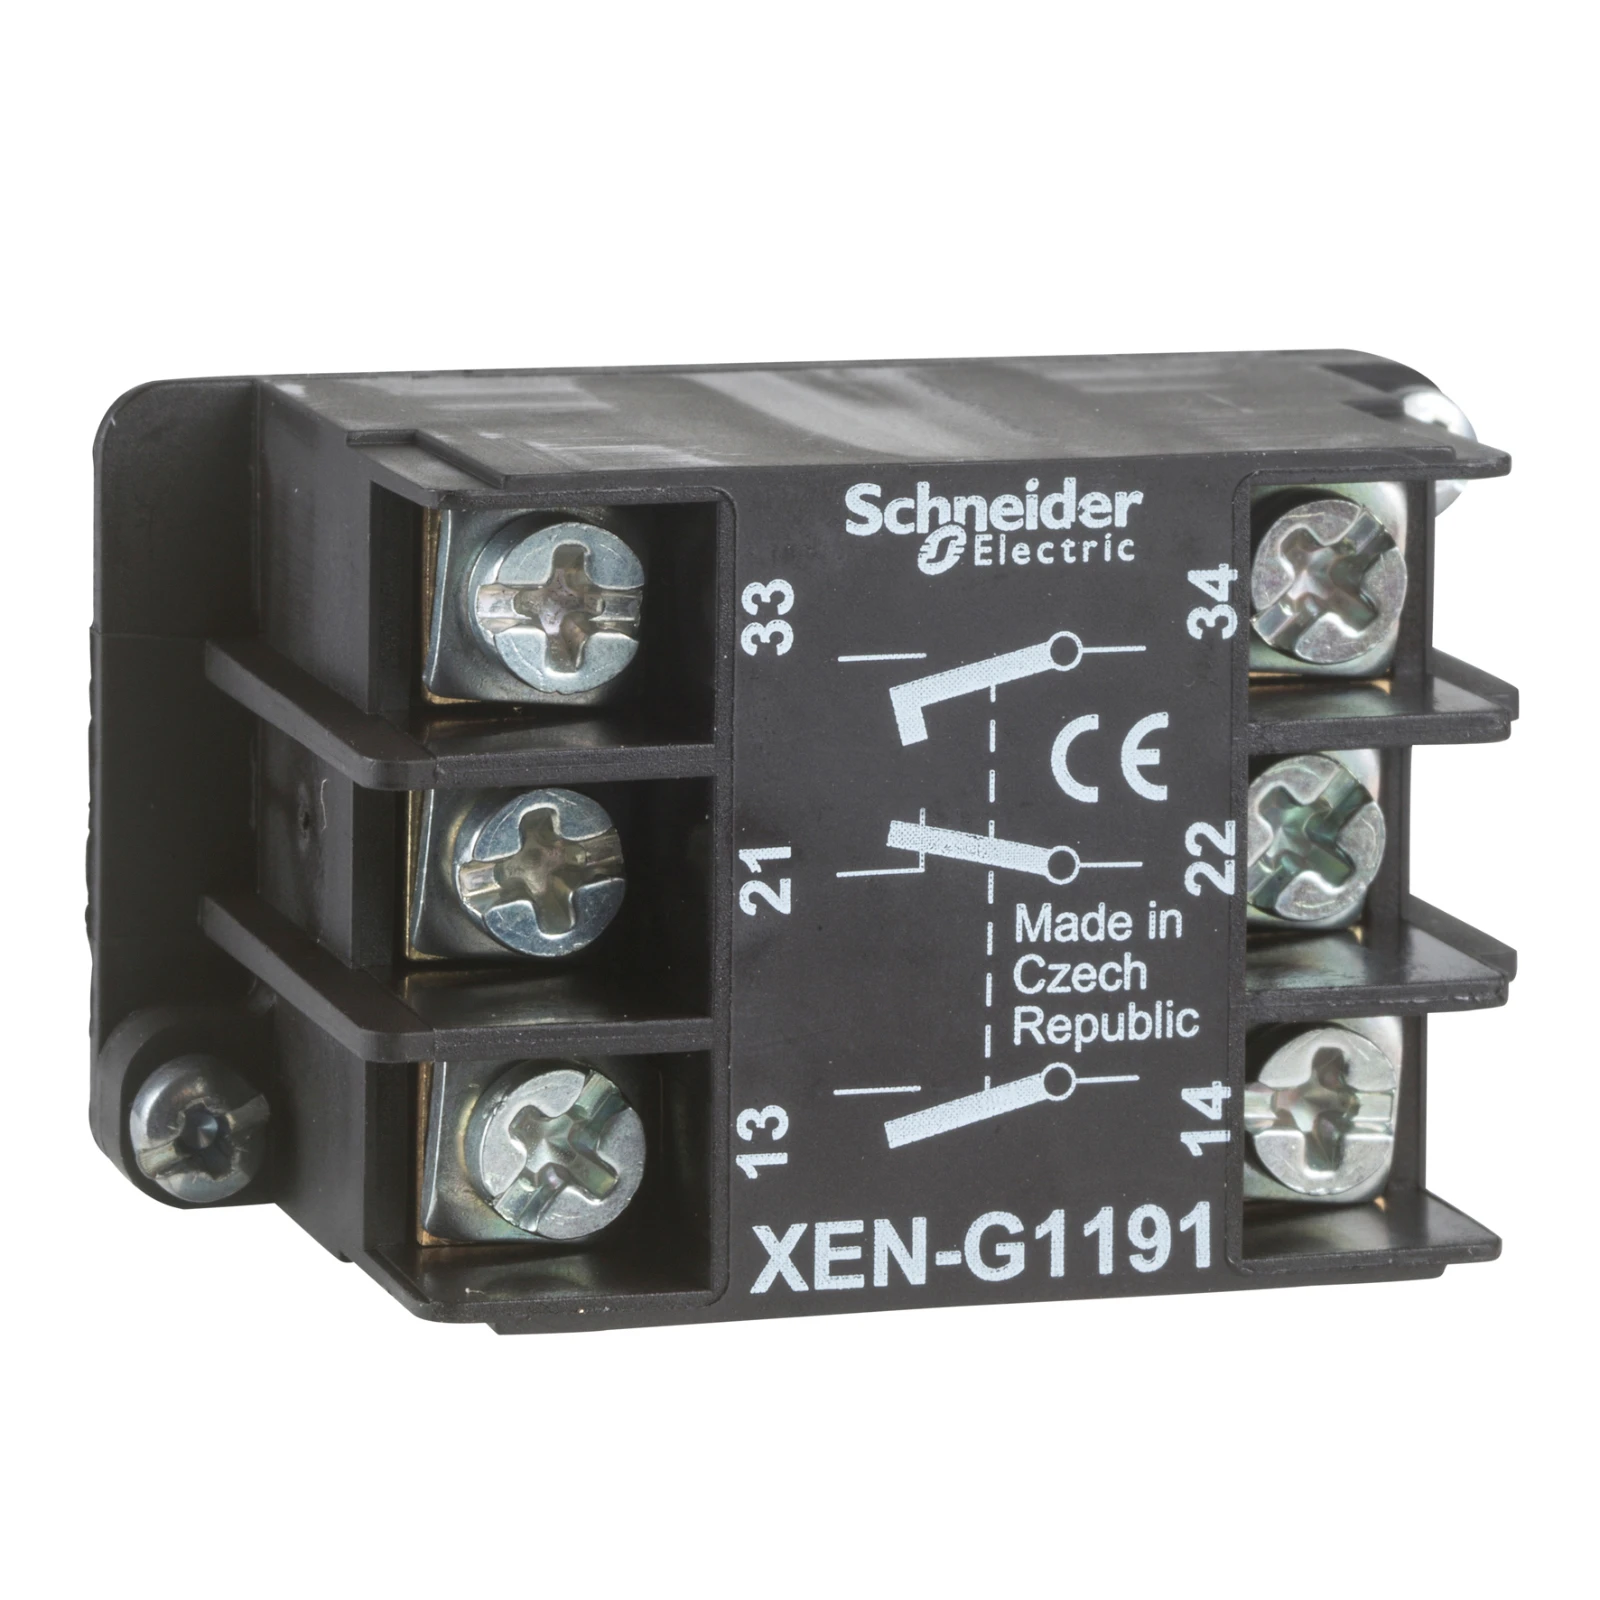 1056285 - Schneider Electric XENG1491